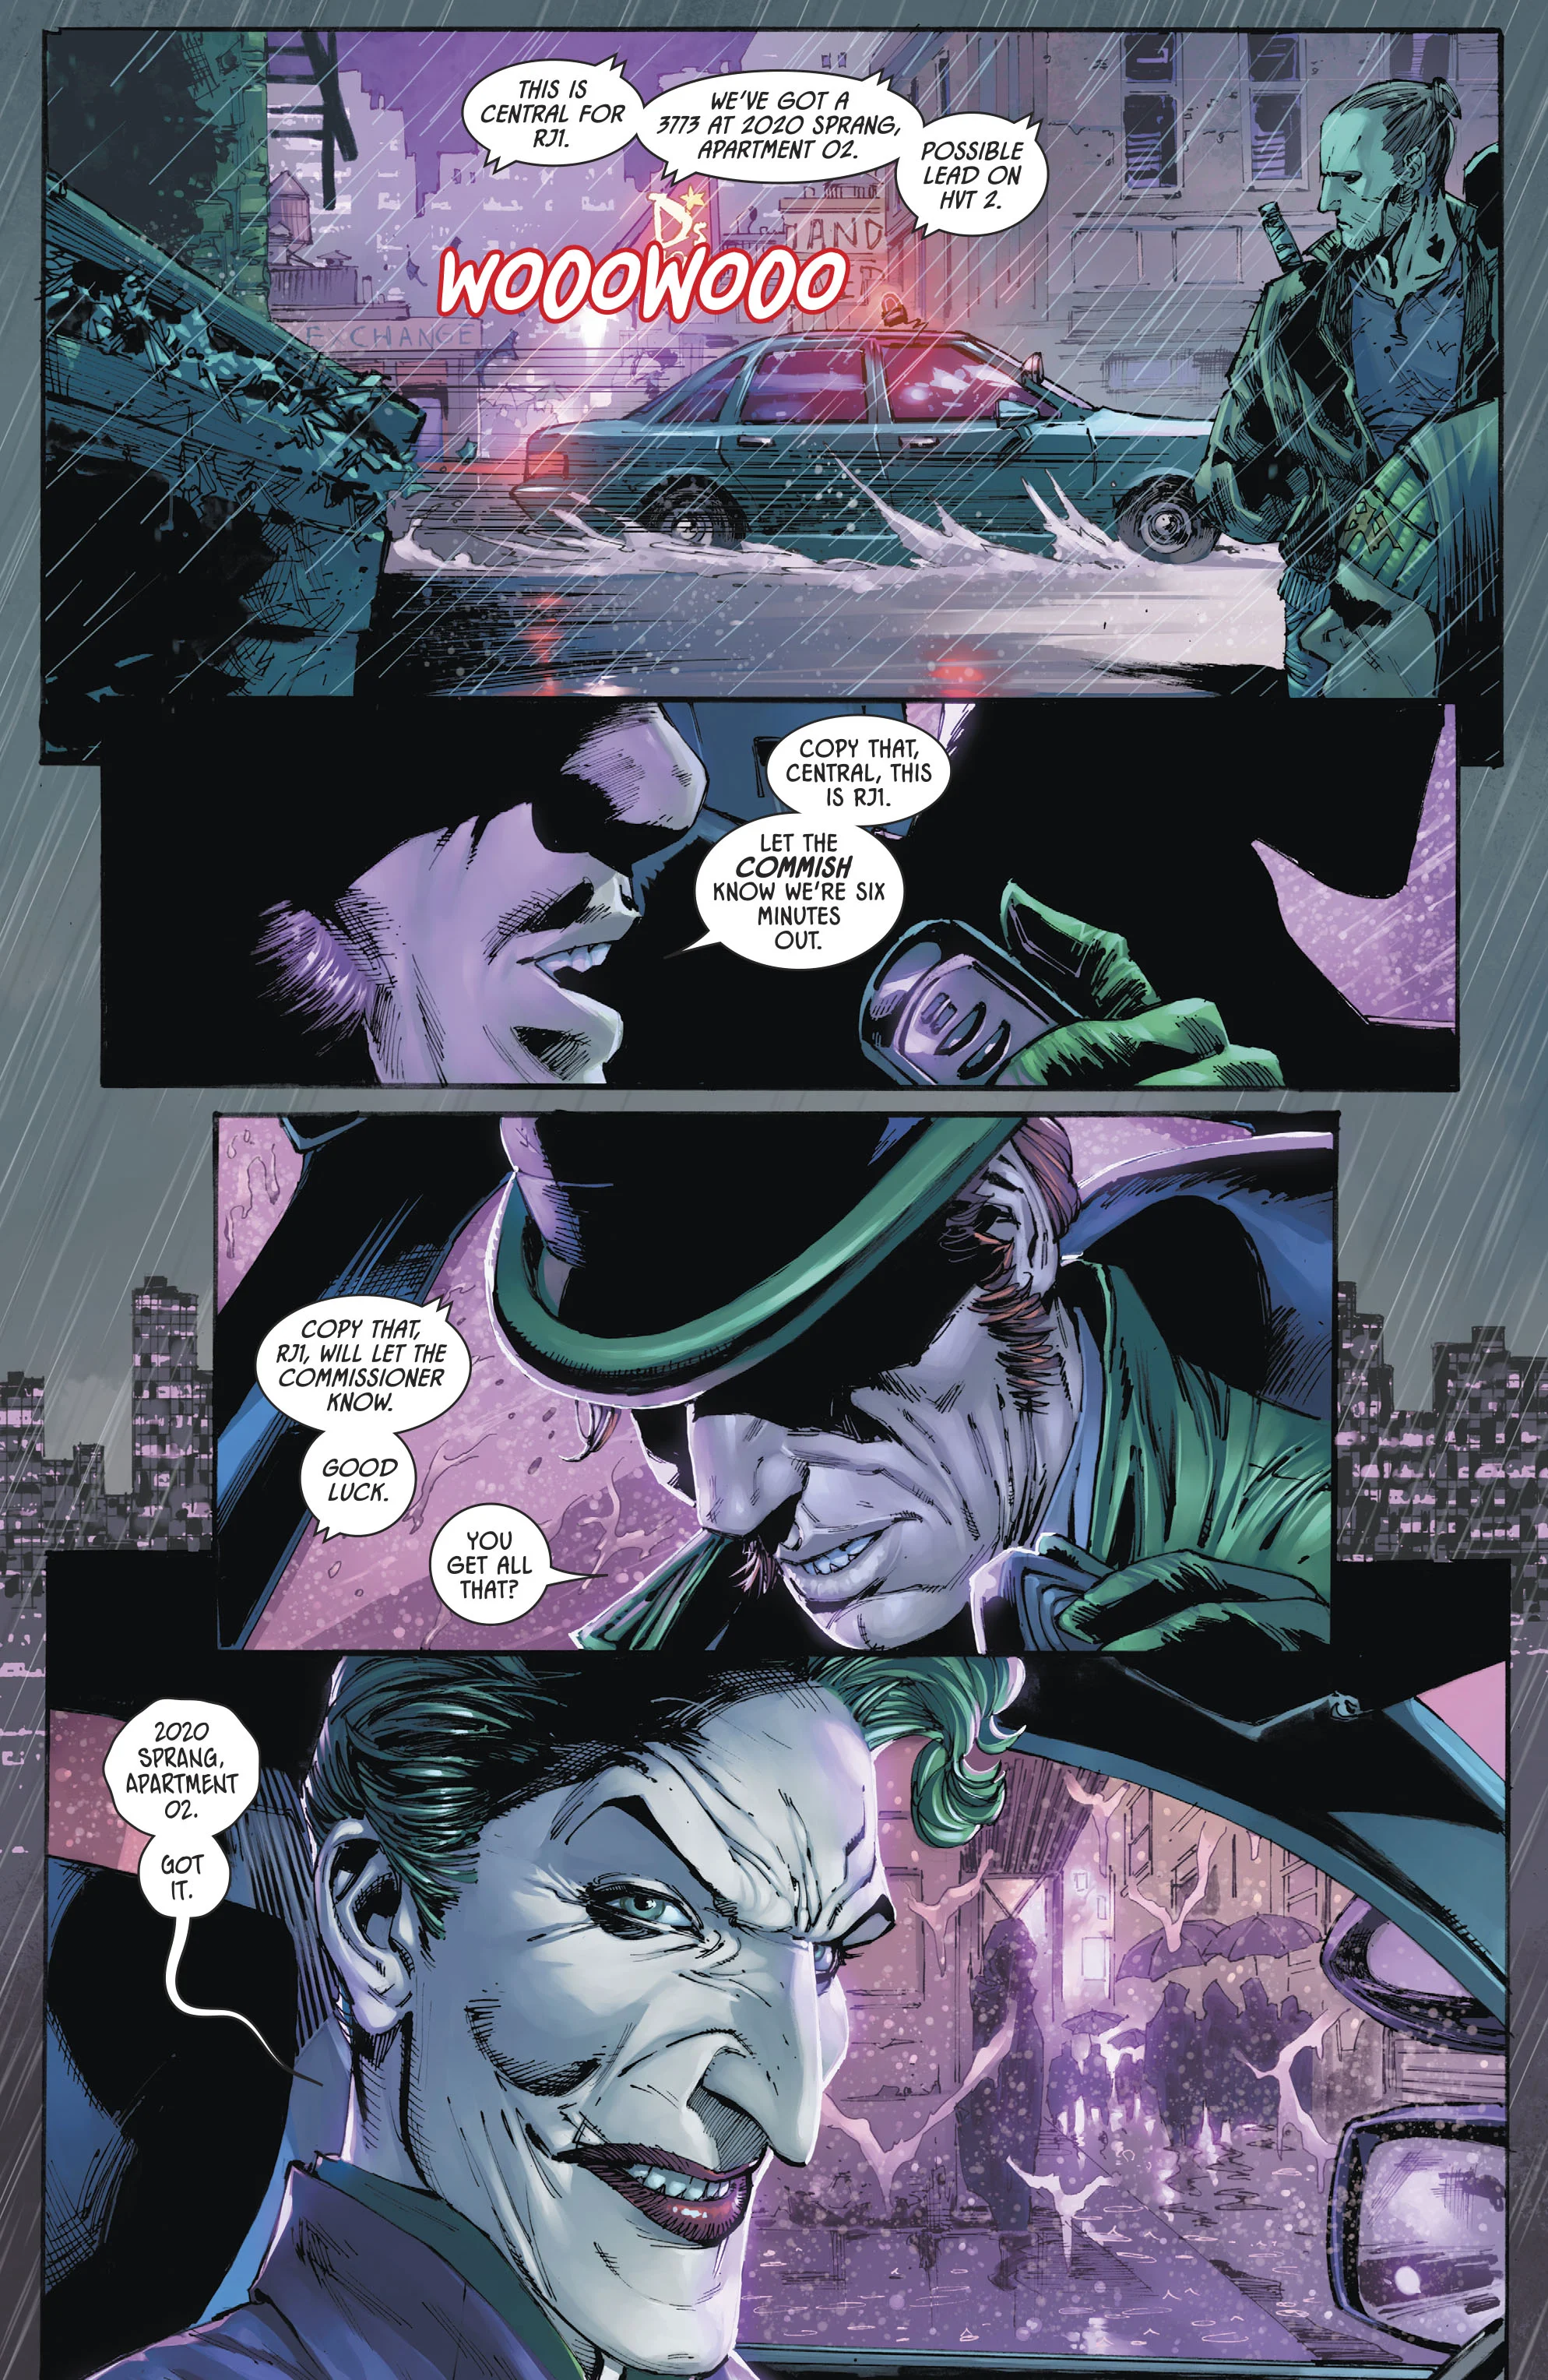 Суперзлодеи вместо полиции, Томас Уэйн вместо Брюса. Что стало с Готэмом в новом сюжете «Бэтмена»? - фото 3